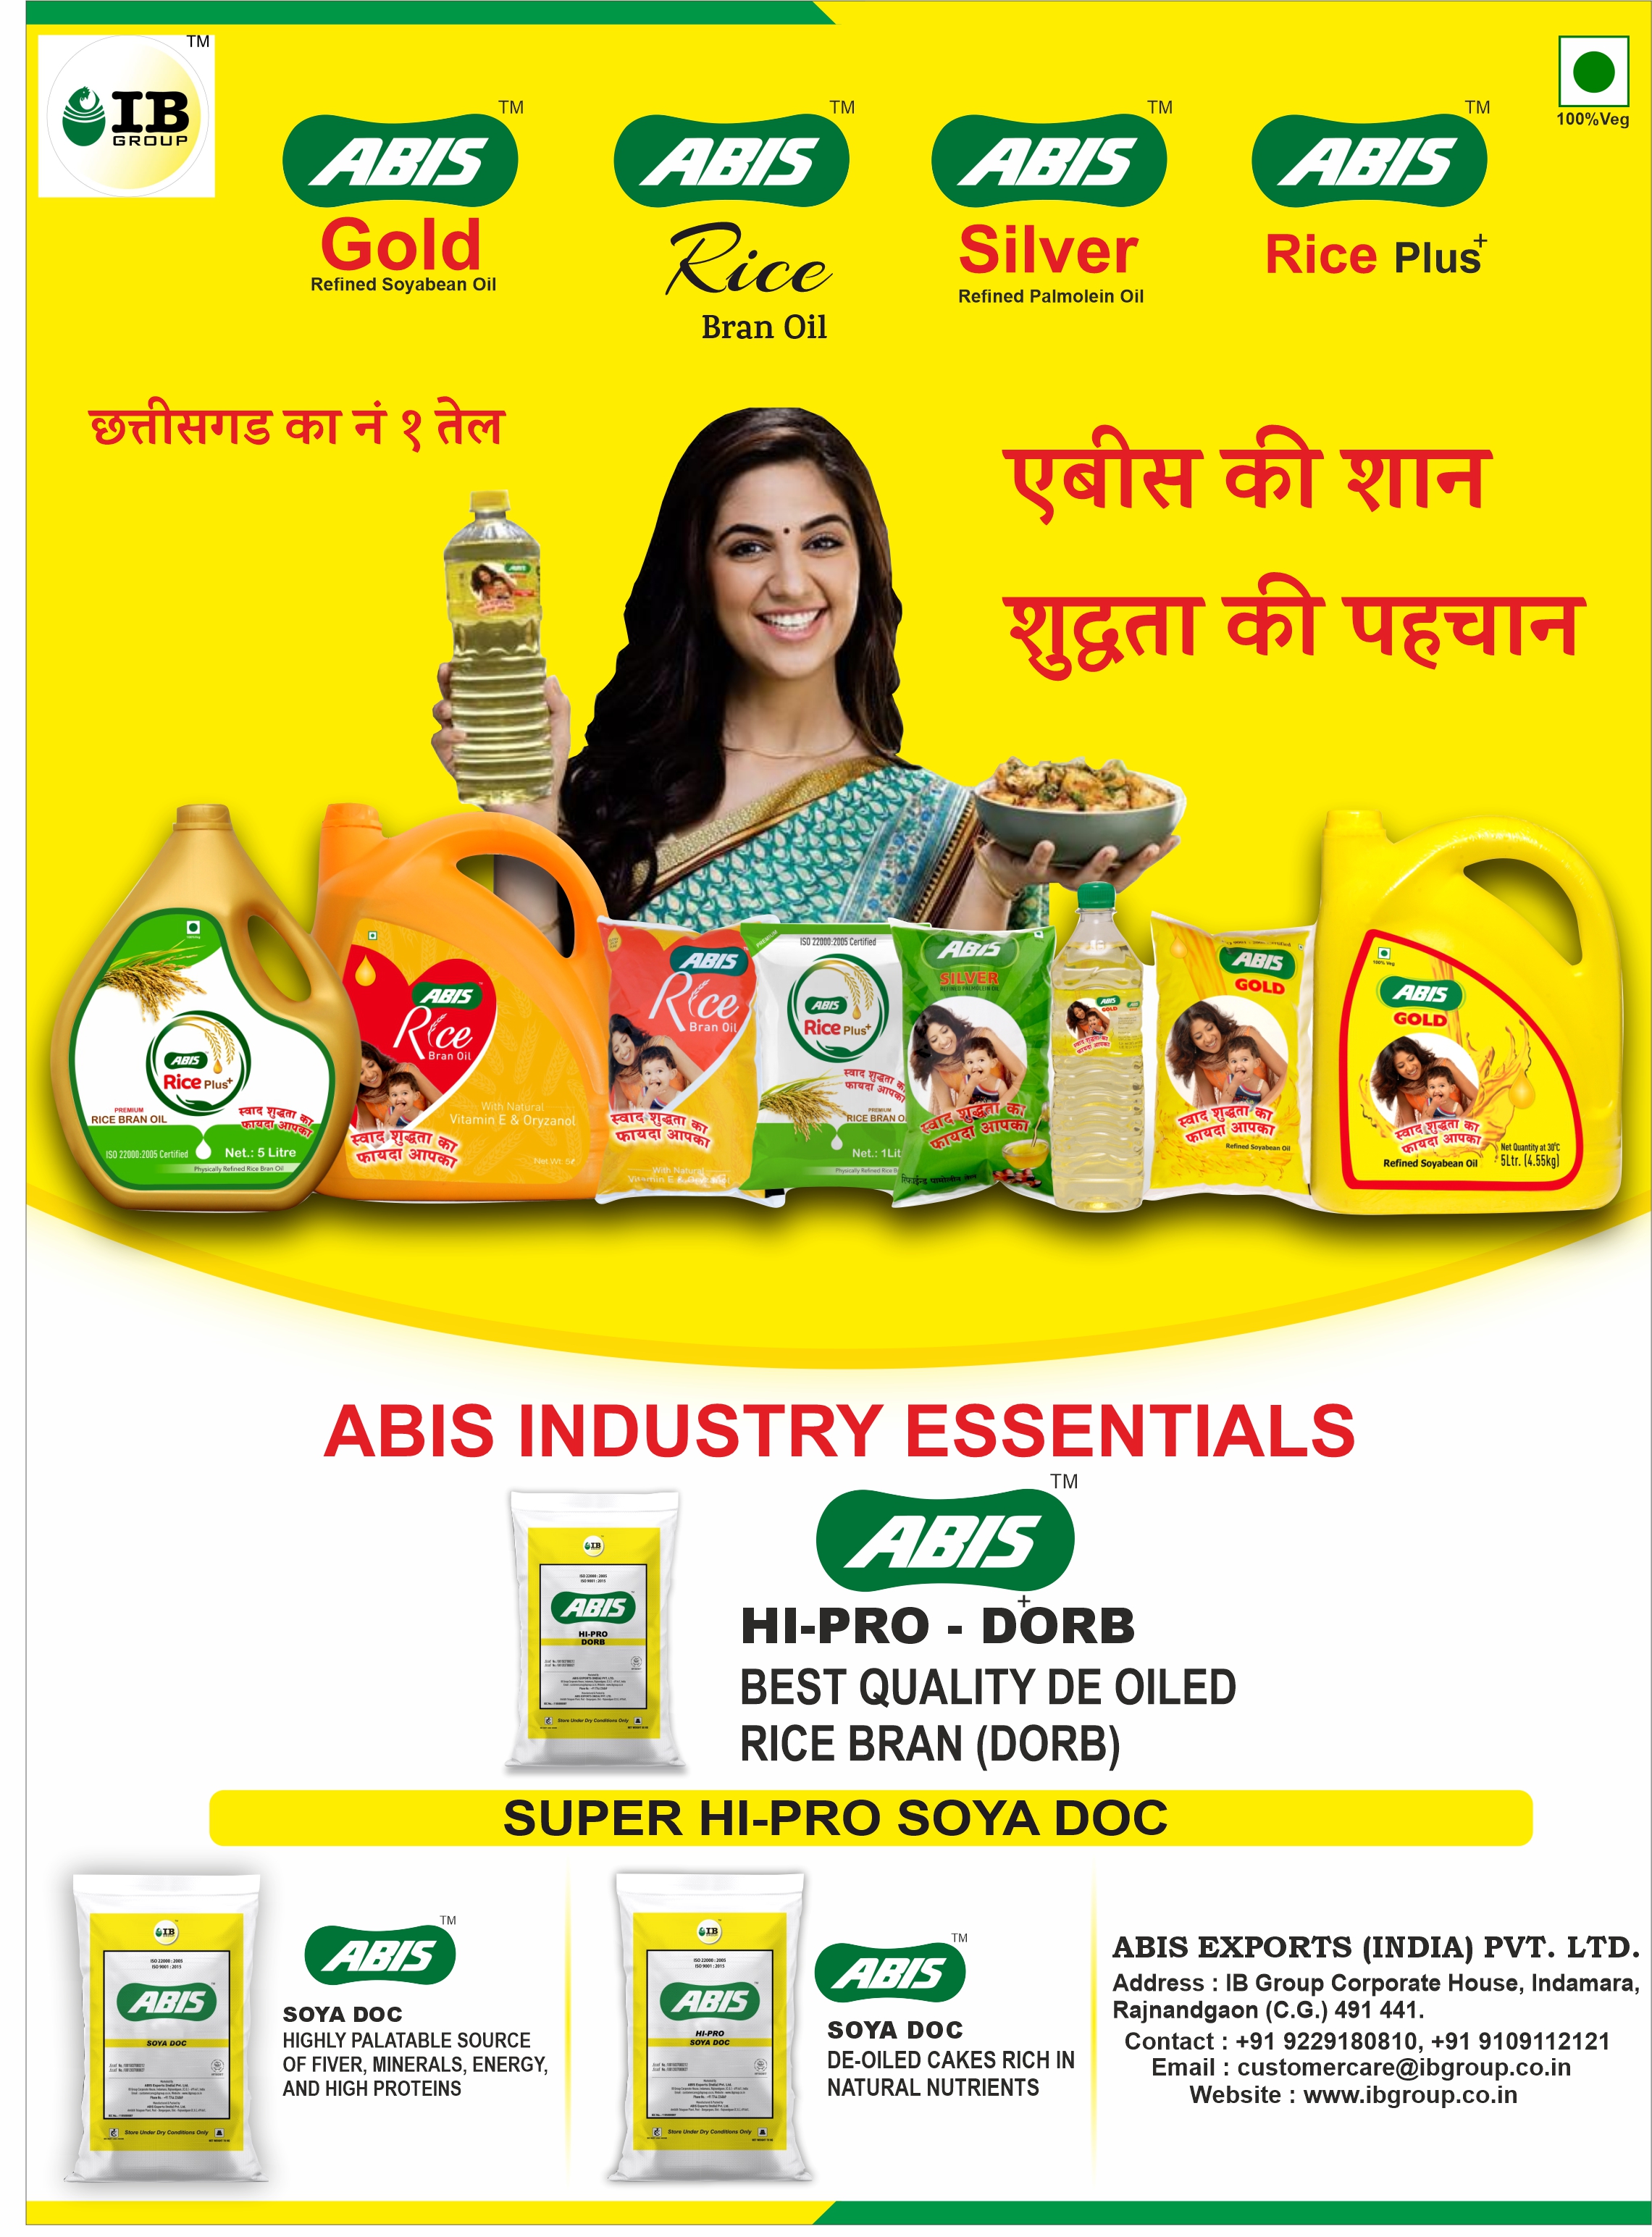 ABIS Exports India Pvt. Ltd.